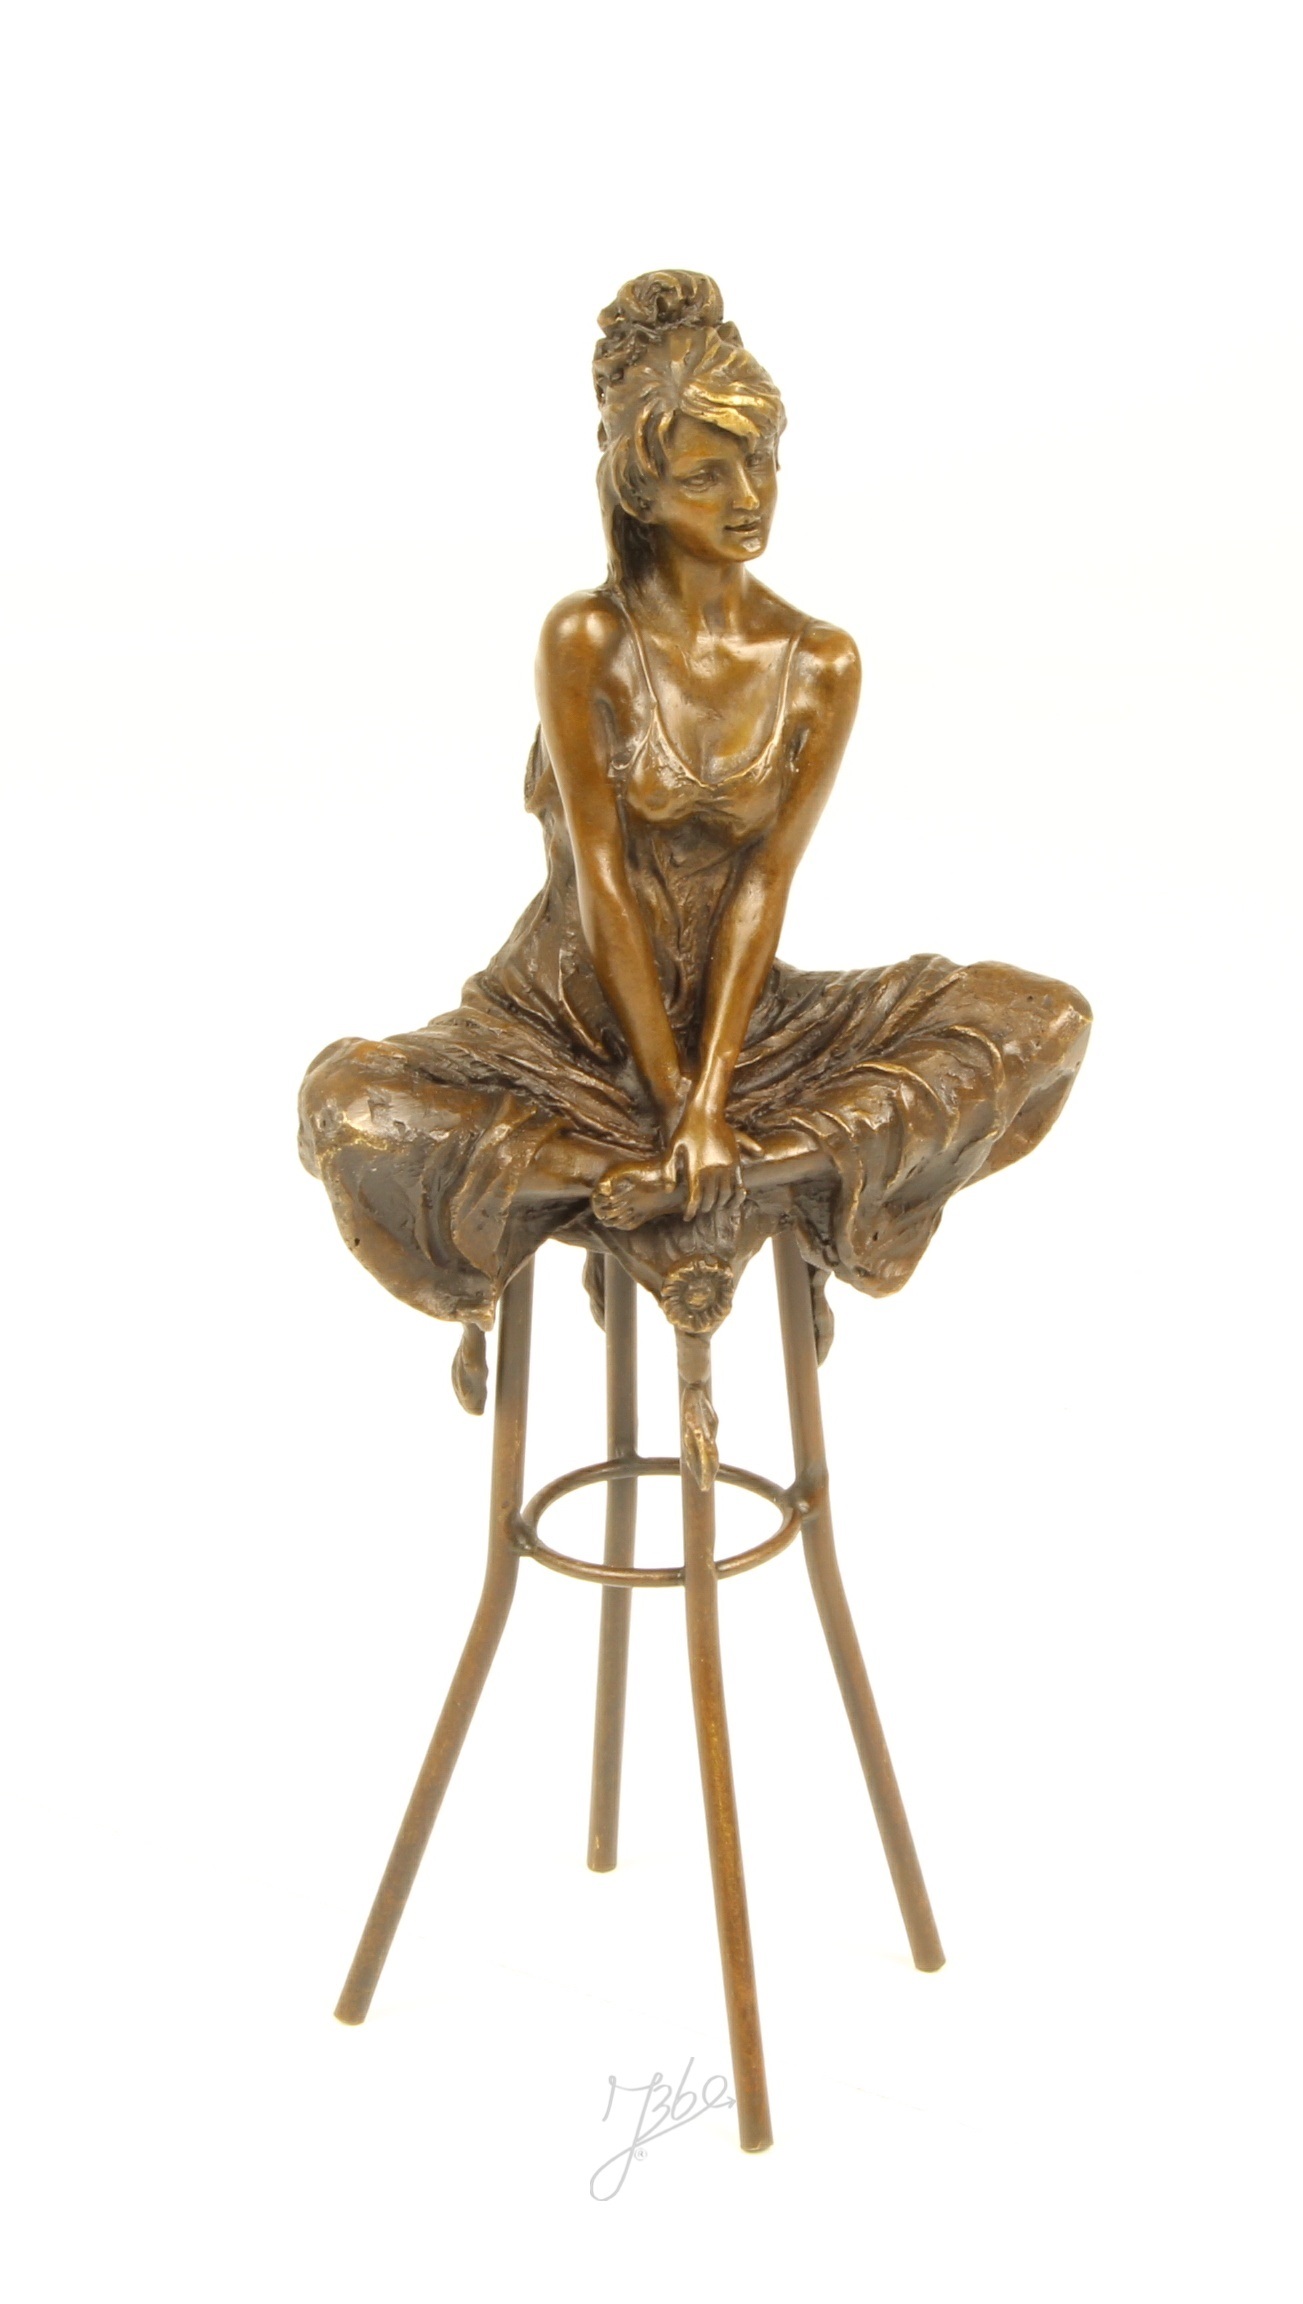 Bronzeskulptur einer sitzenden Dame auf einem Barhocker